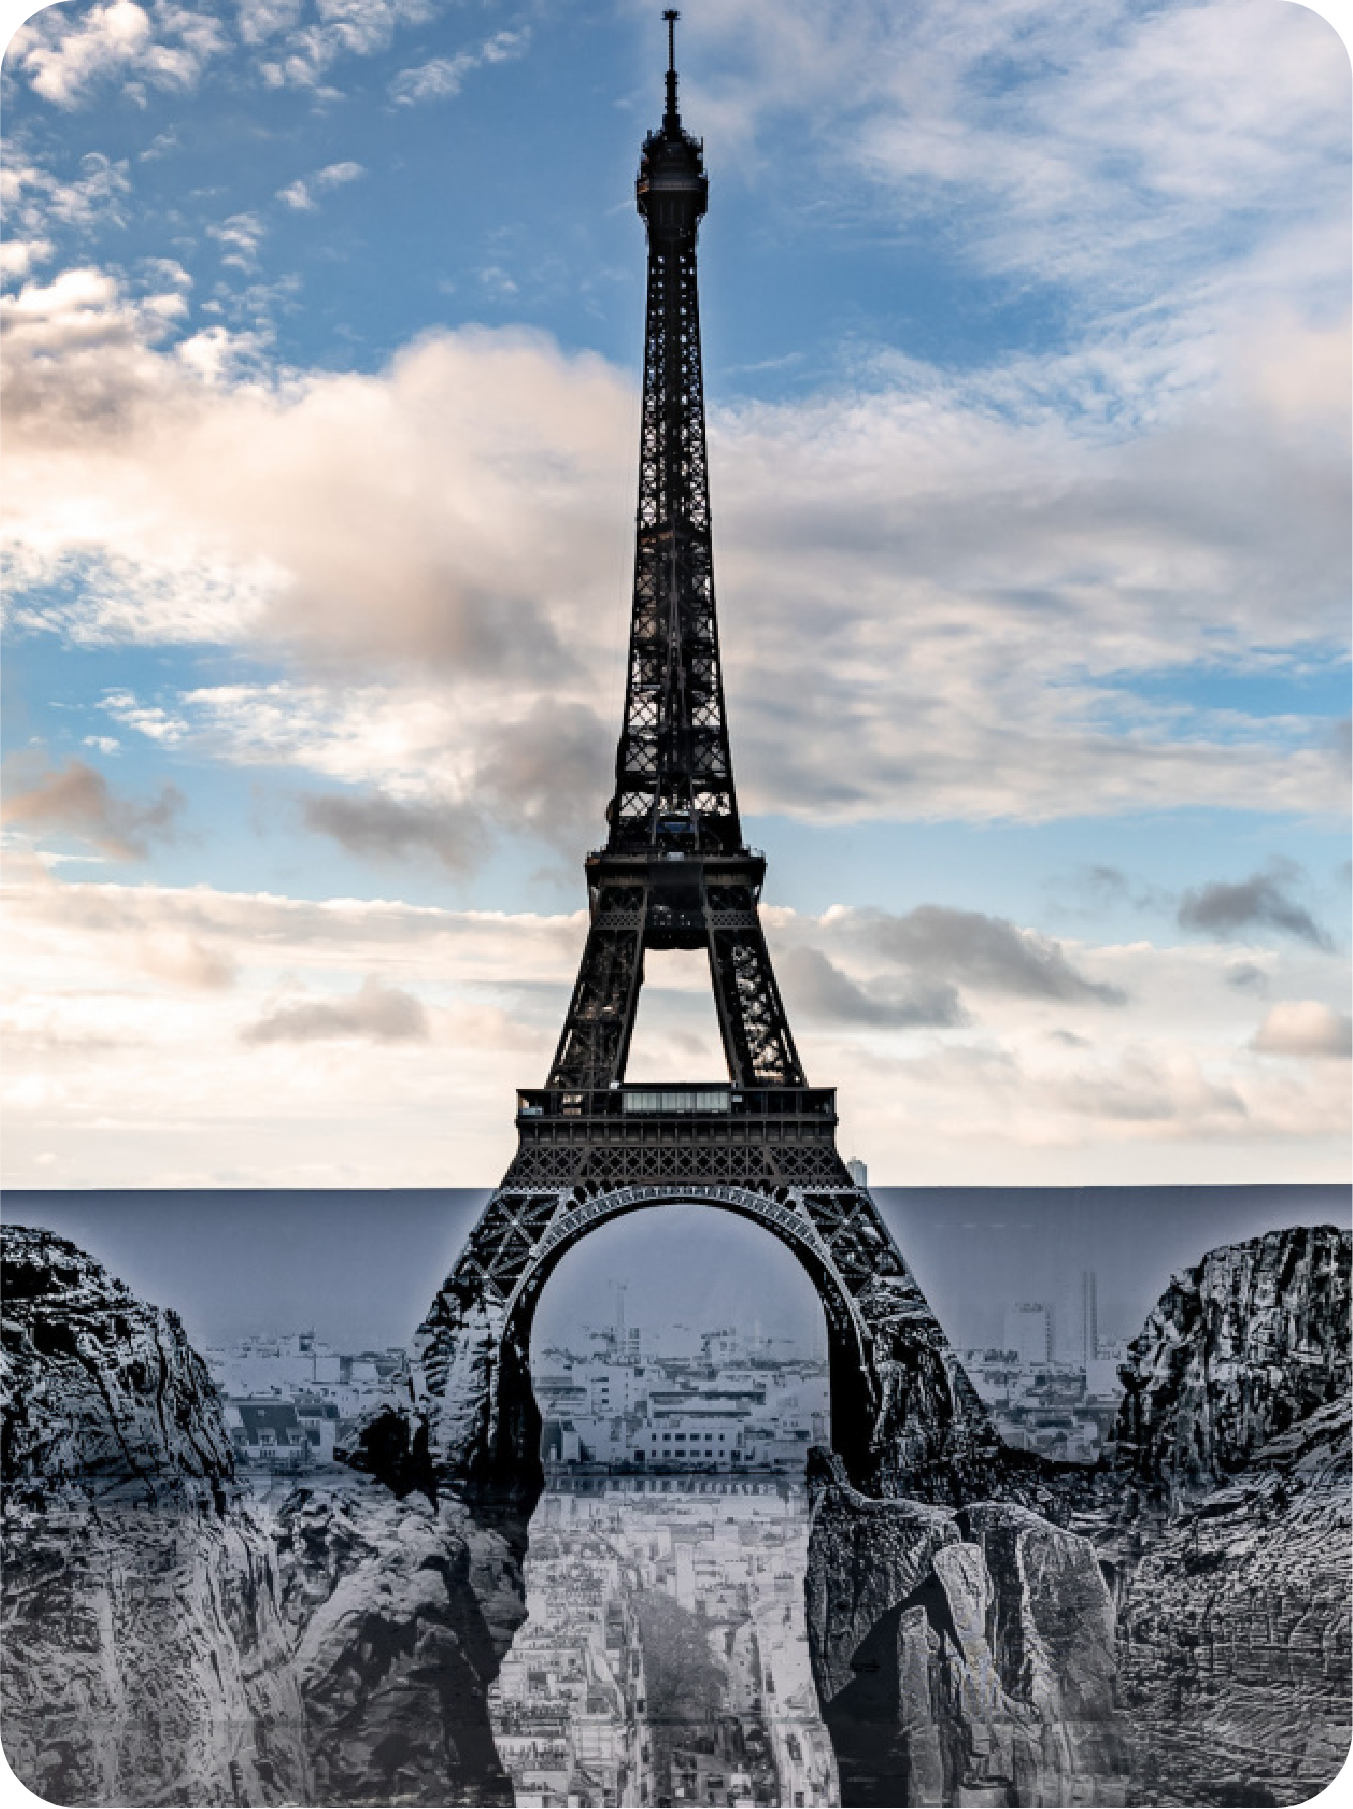 Société d'exploitation de la tour Eiffel